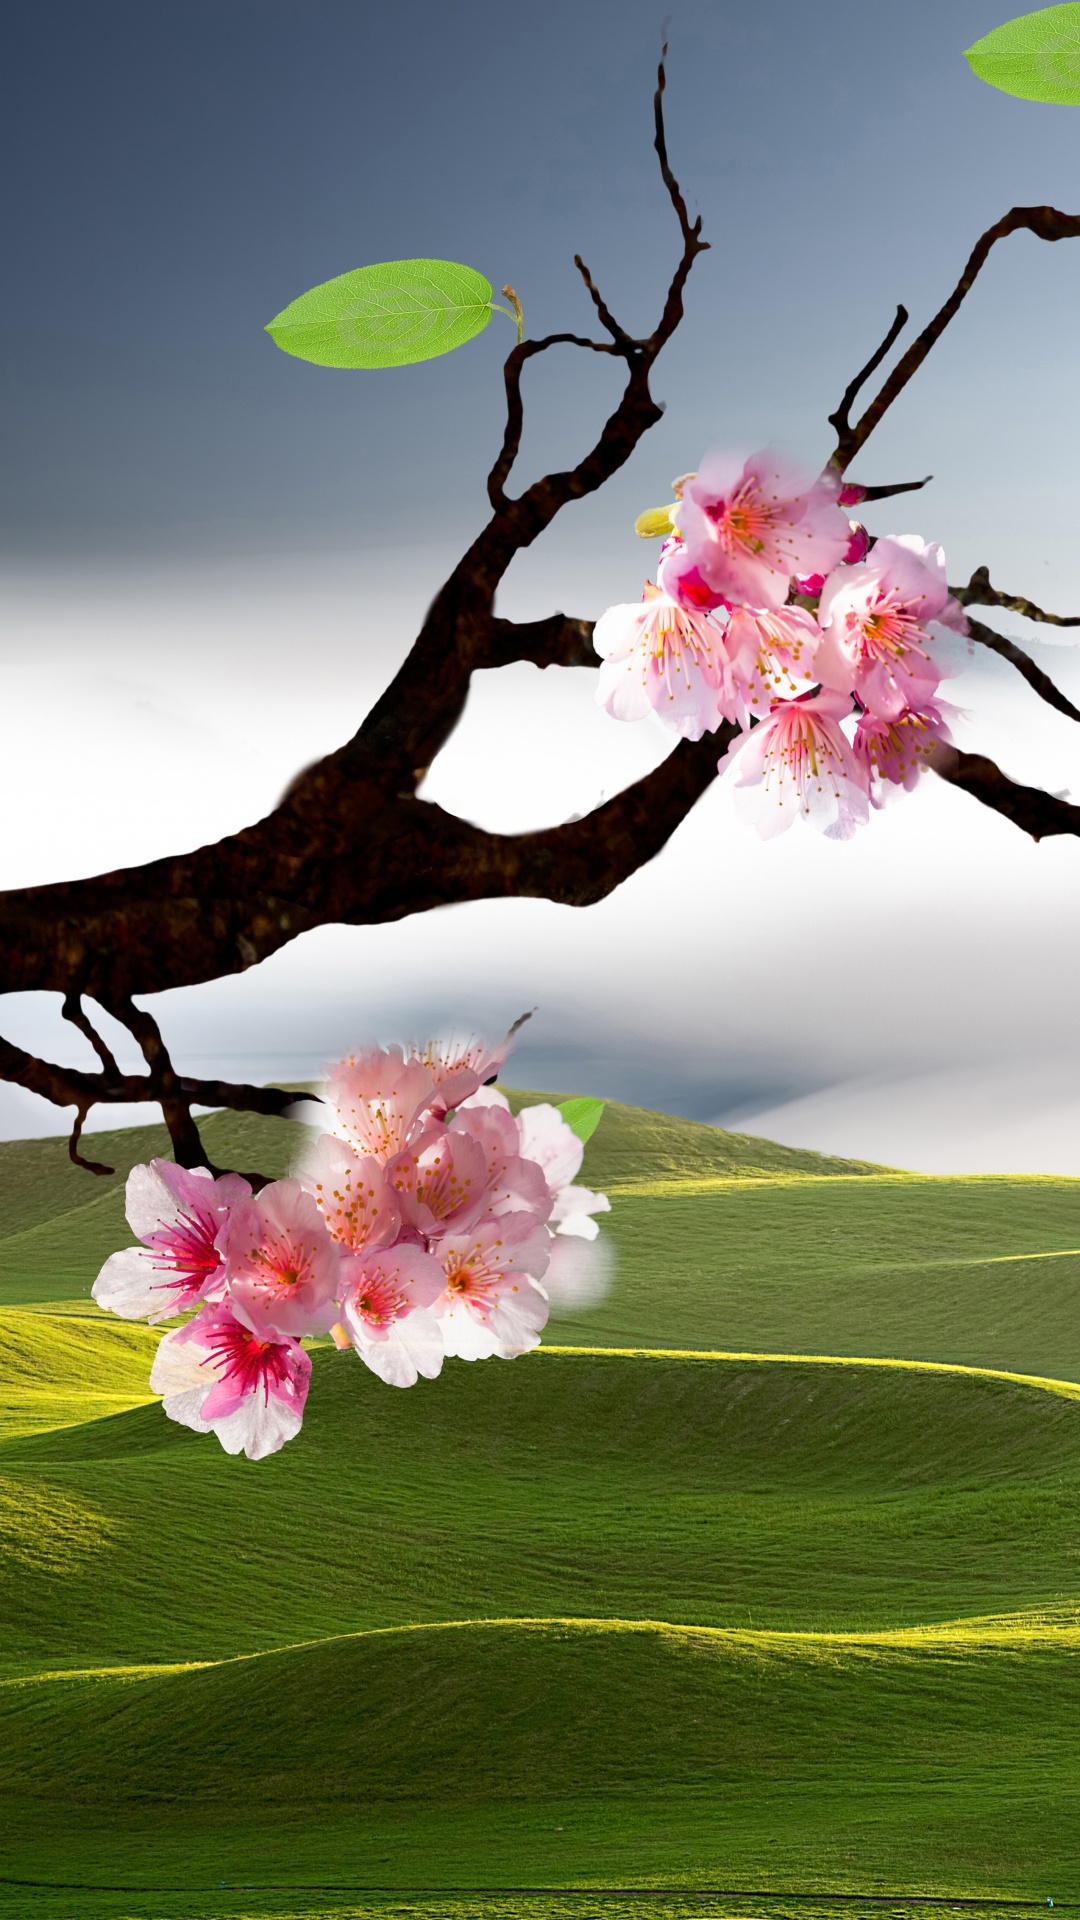 风景画, 樱花, 性质, 开花, 弹簧 壁纸 1080x1920 允许